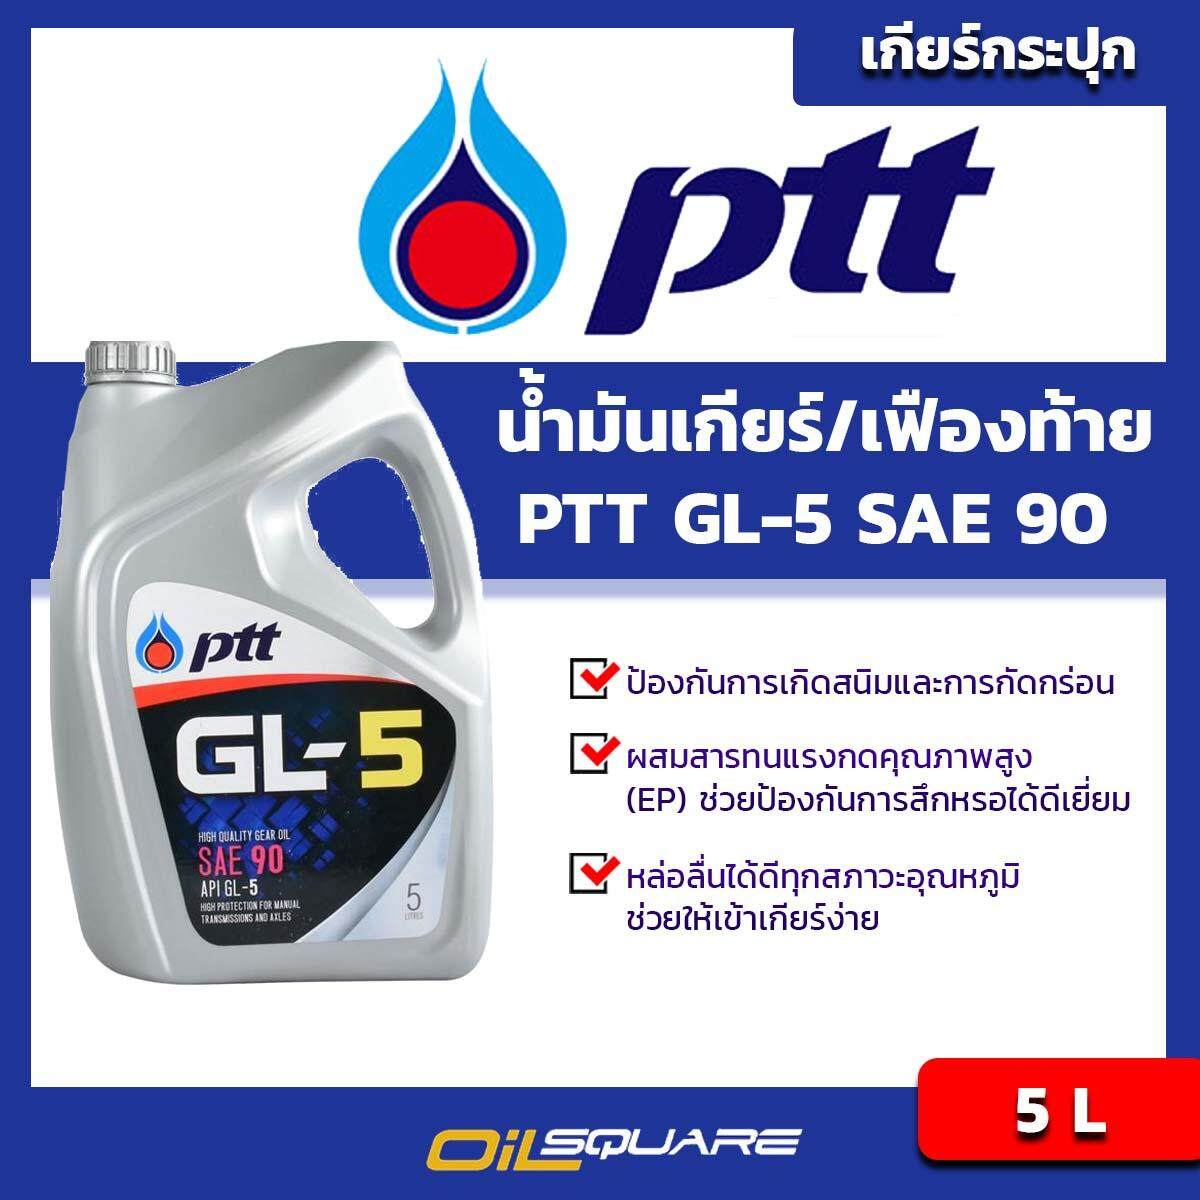 ปตท จีแอล5 PTT GL-5 SAE90 ขนาด 5 ลิตร l น้ำมันเกียร์และเฟืองท้าย [Oilsquare-ออยสแควร์]